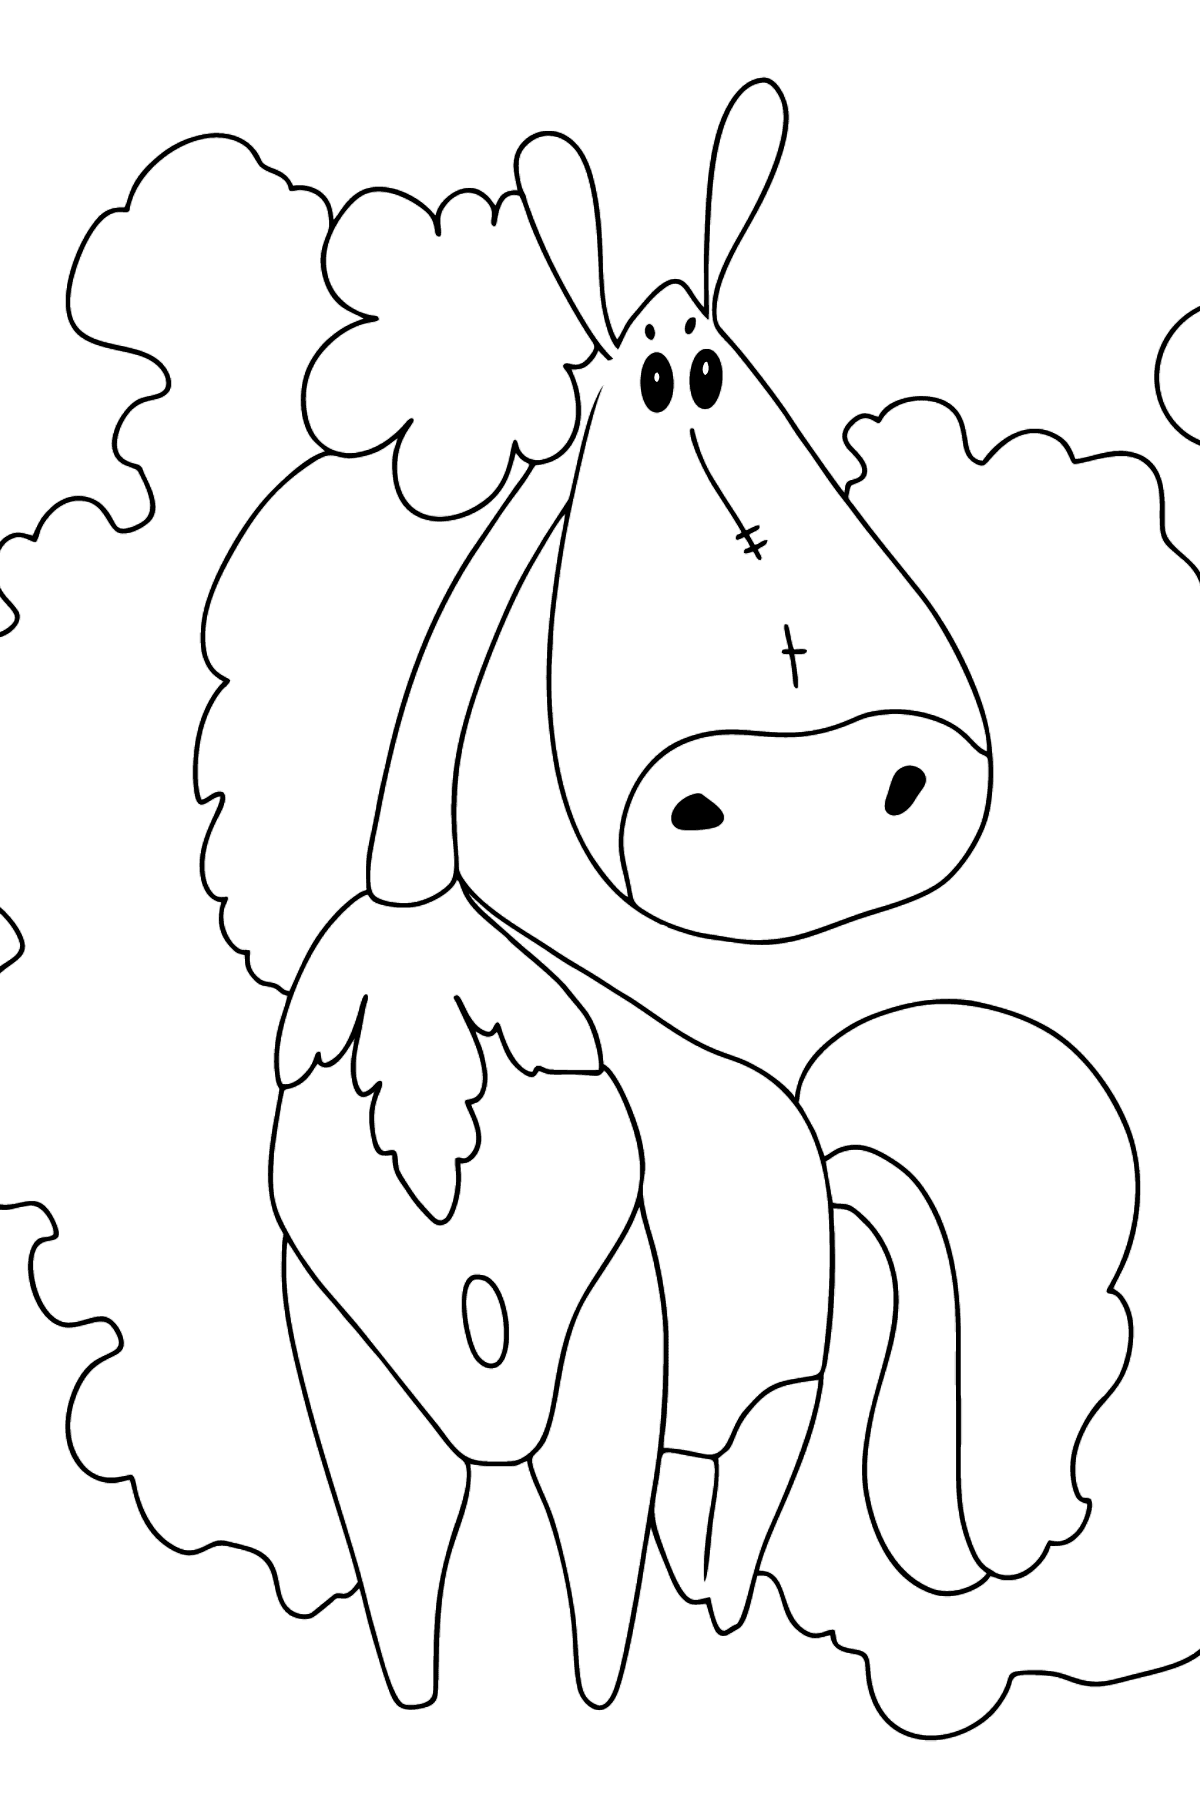 Desenho de cavalo fashionista para colorir - Imagens para Colorir para Crianças